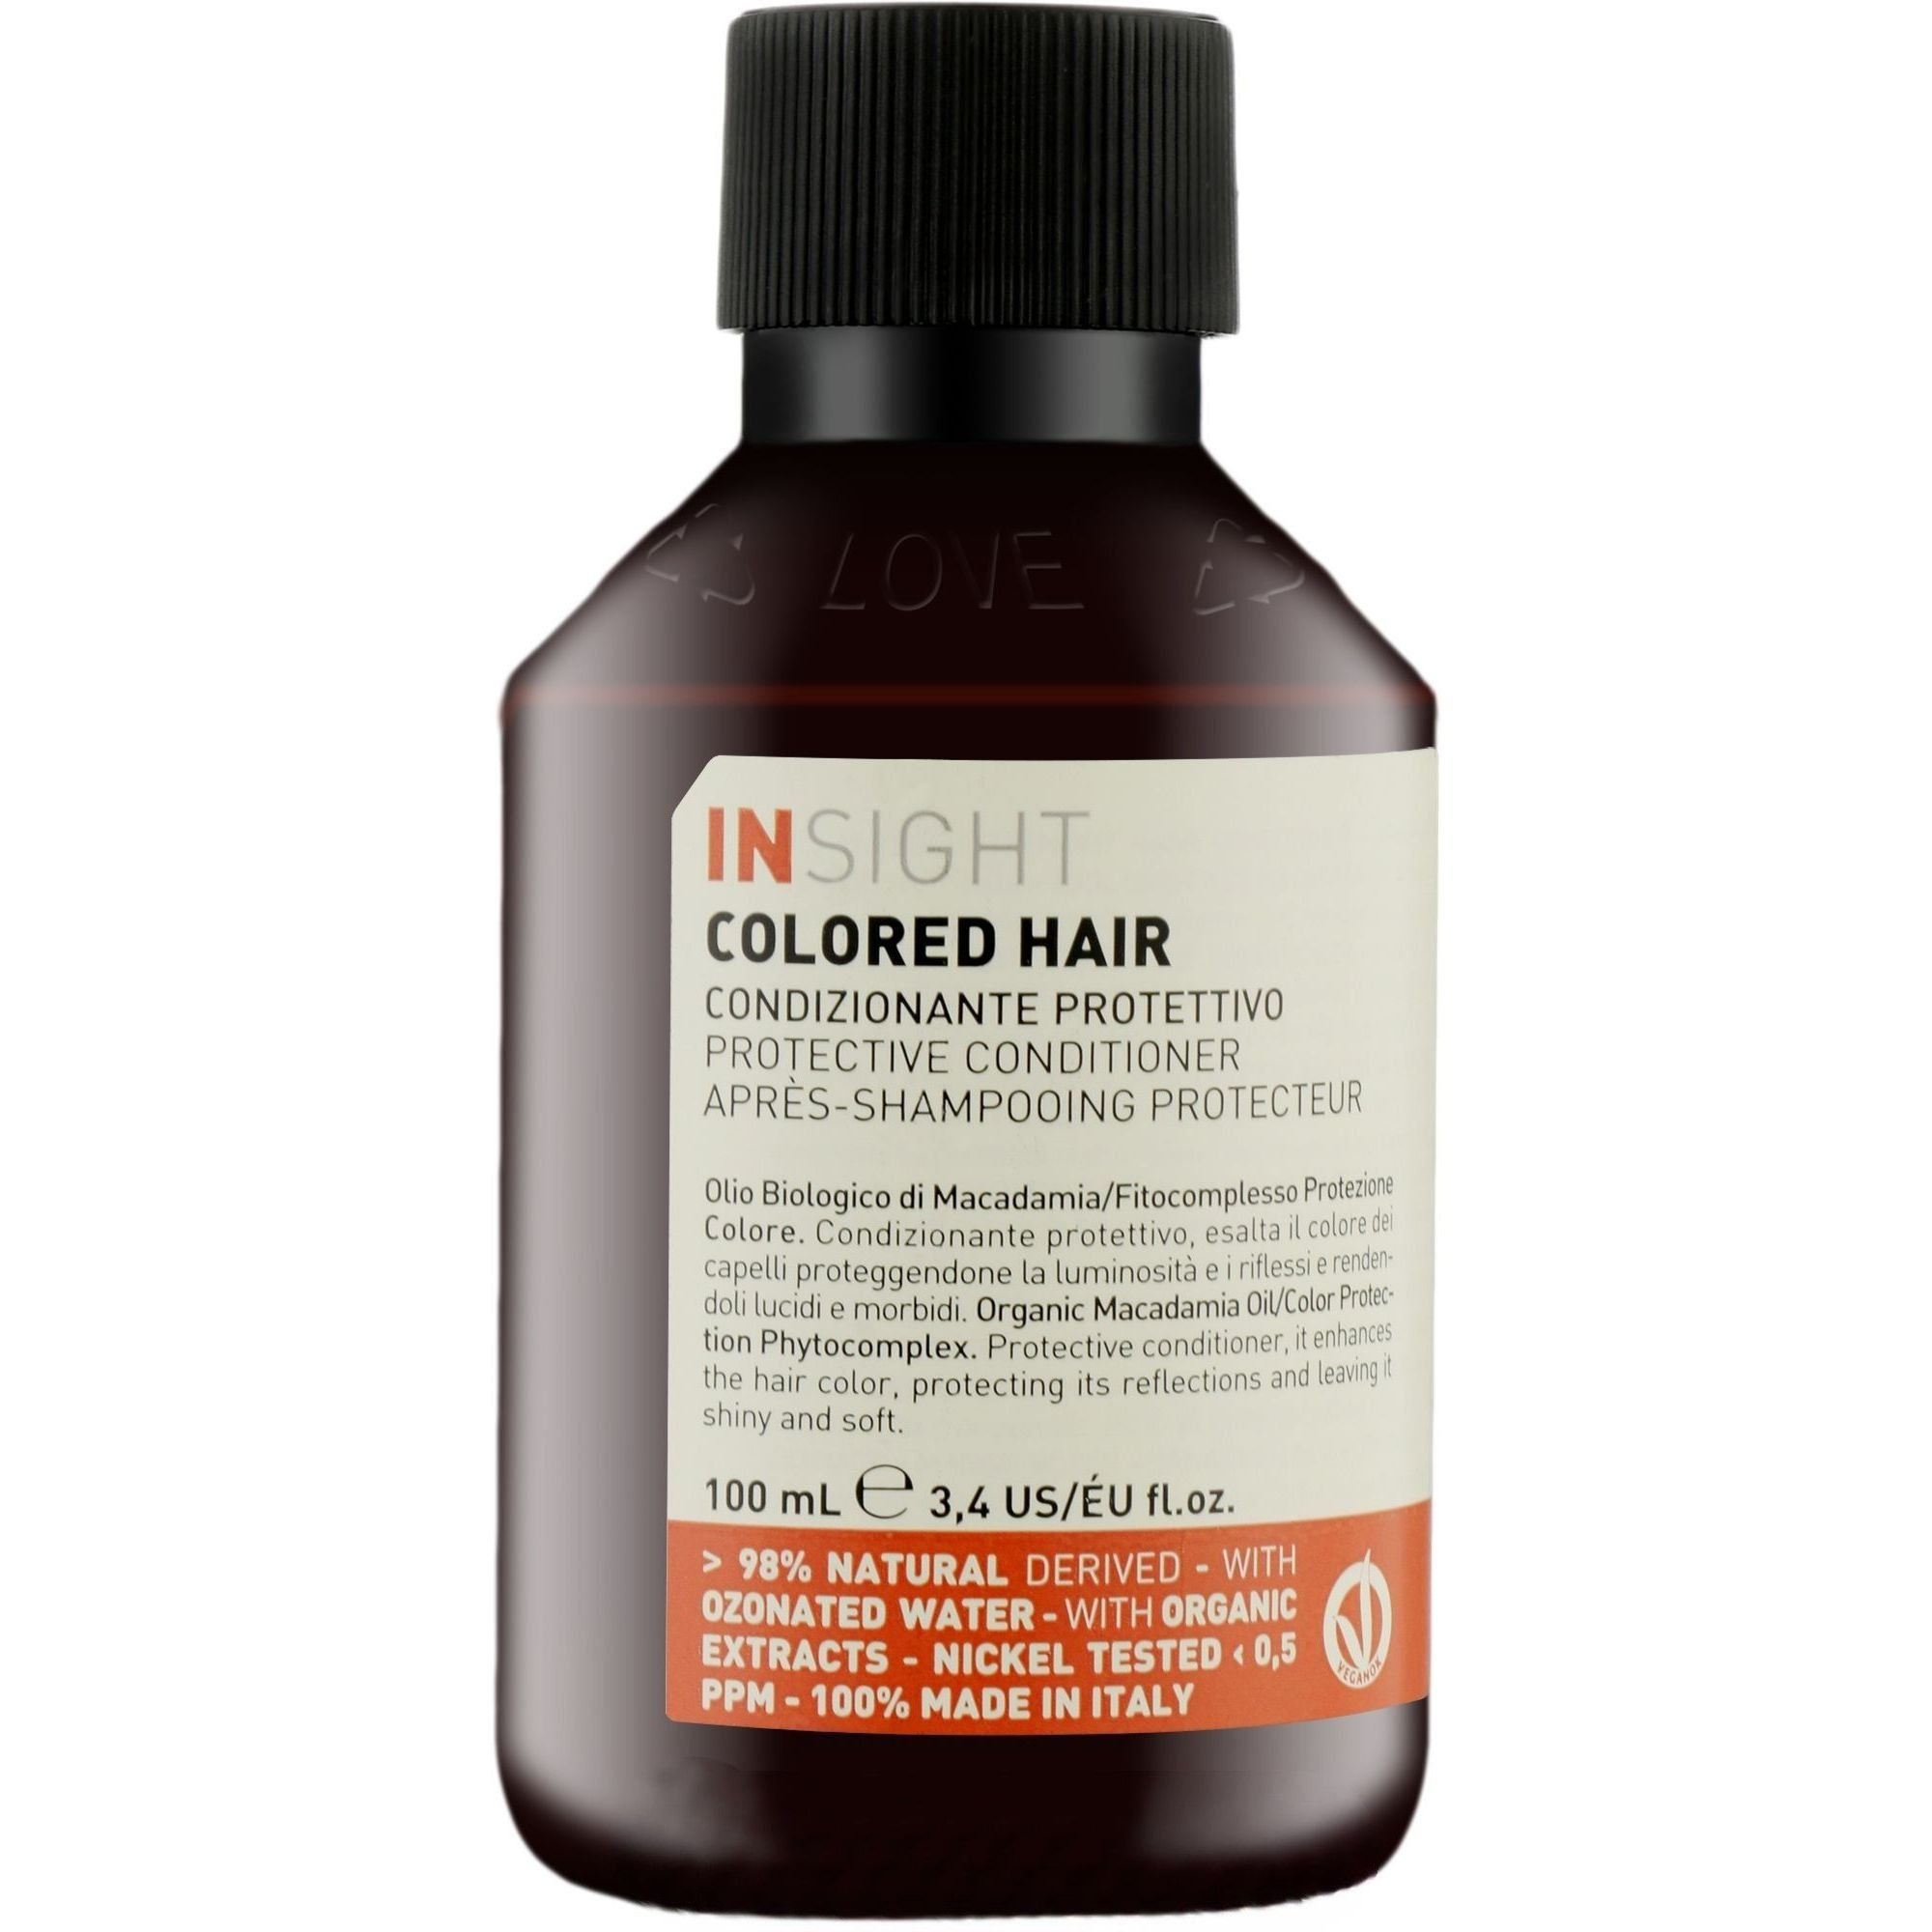 Кондиционер Insight Colored Hair Protective Conditioner для сохранения цвета окрашенных волос 100 мл - фото 1